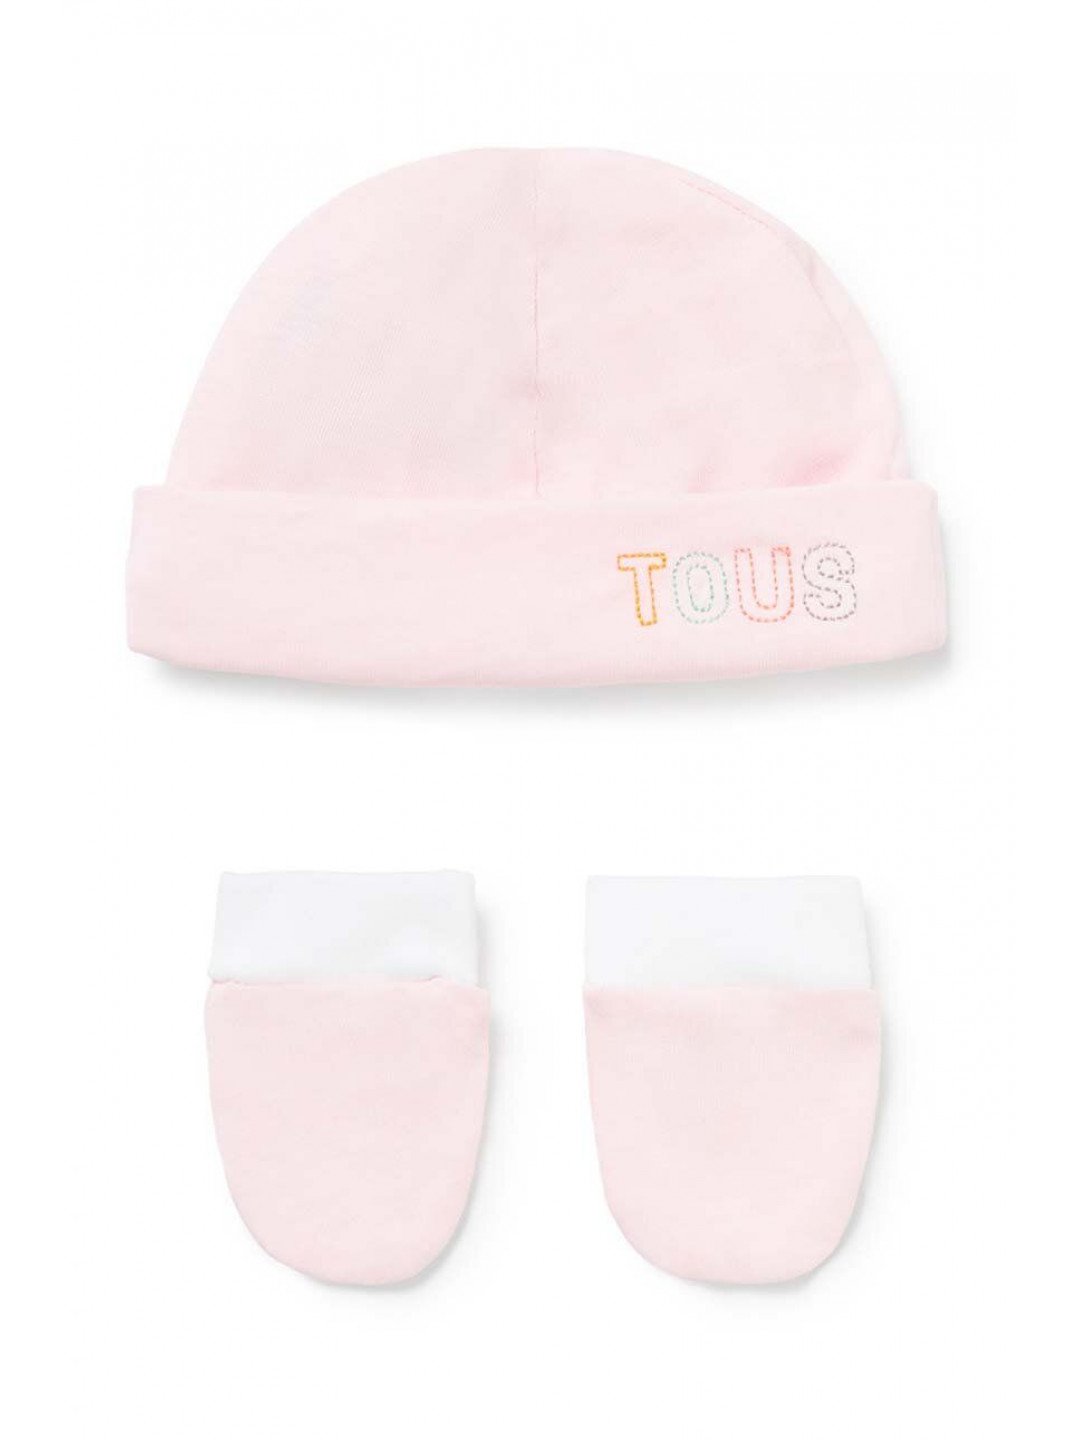 Čepice a dětské rukavice Tous růžová barva z tenké pleteniny